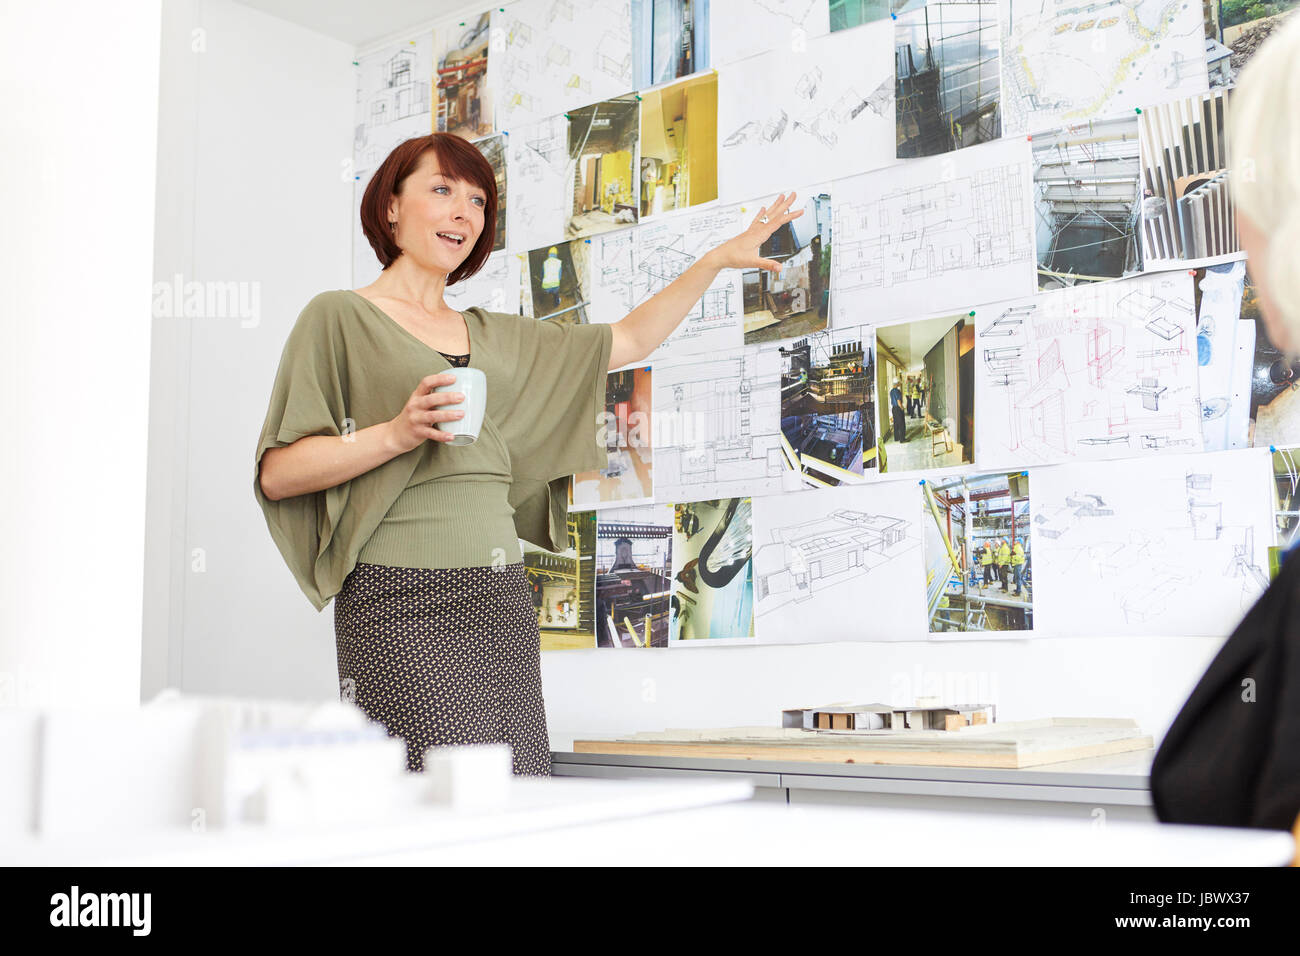 Arquitecto femenino apuntando a bordo de humor en la presentación de oficina Foto de stock